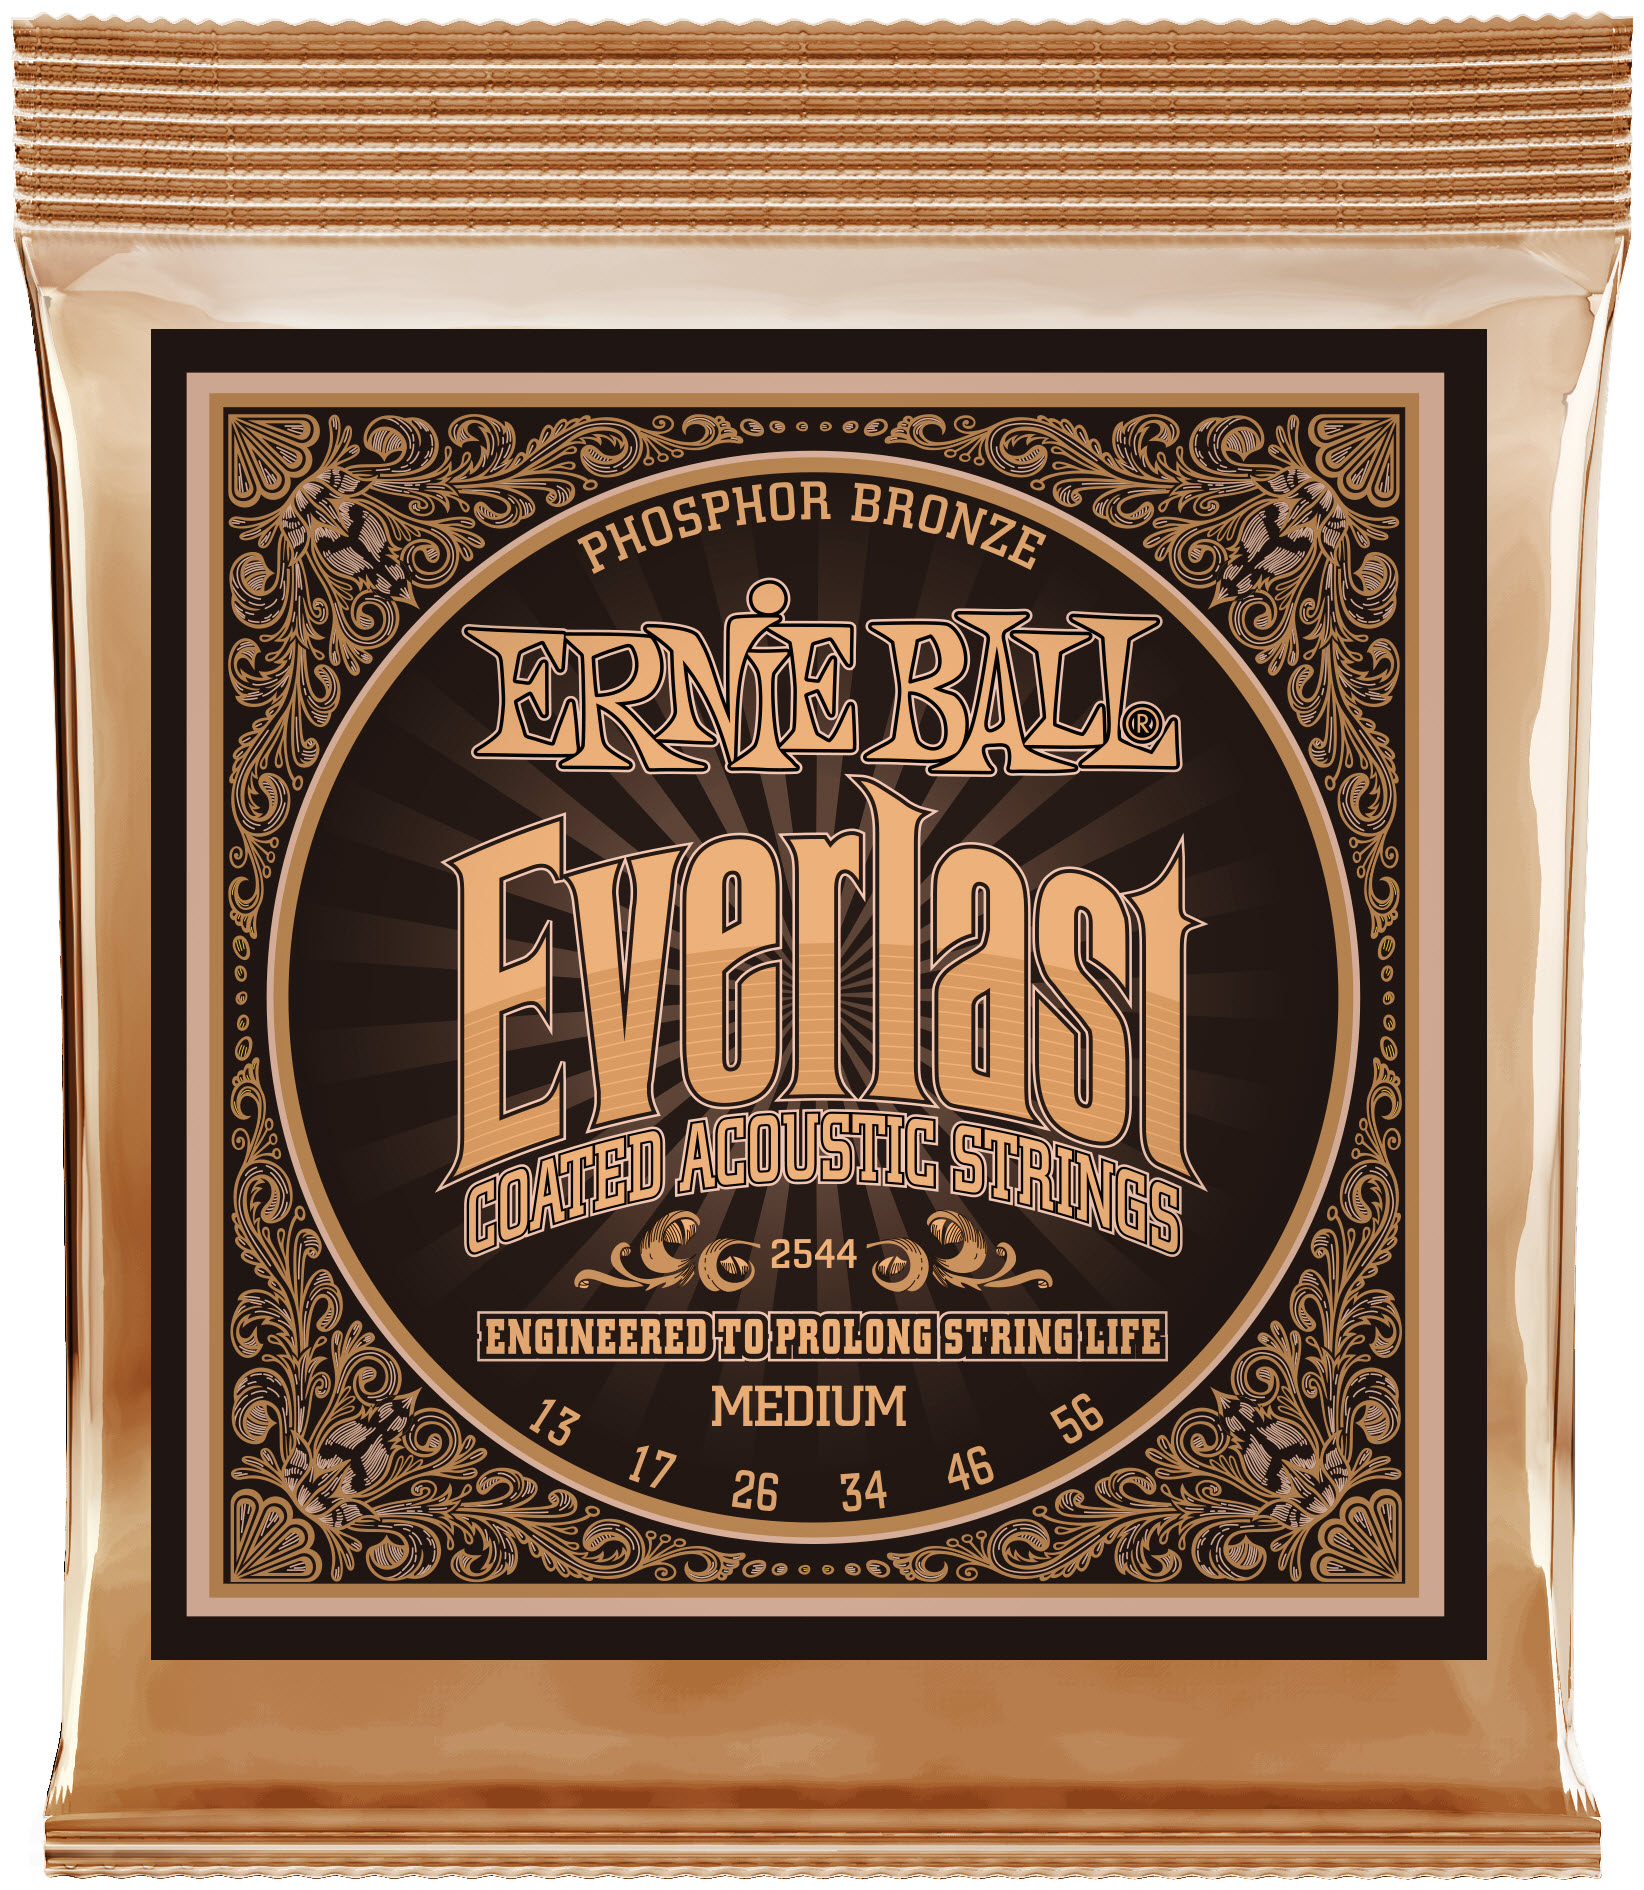 Ernie Ball Everlast Phosphor Bronze Medium 13-56